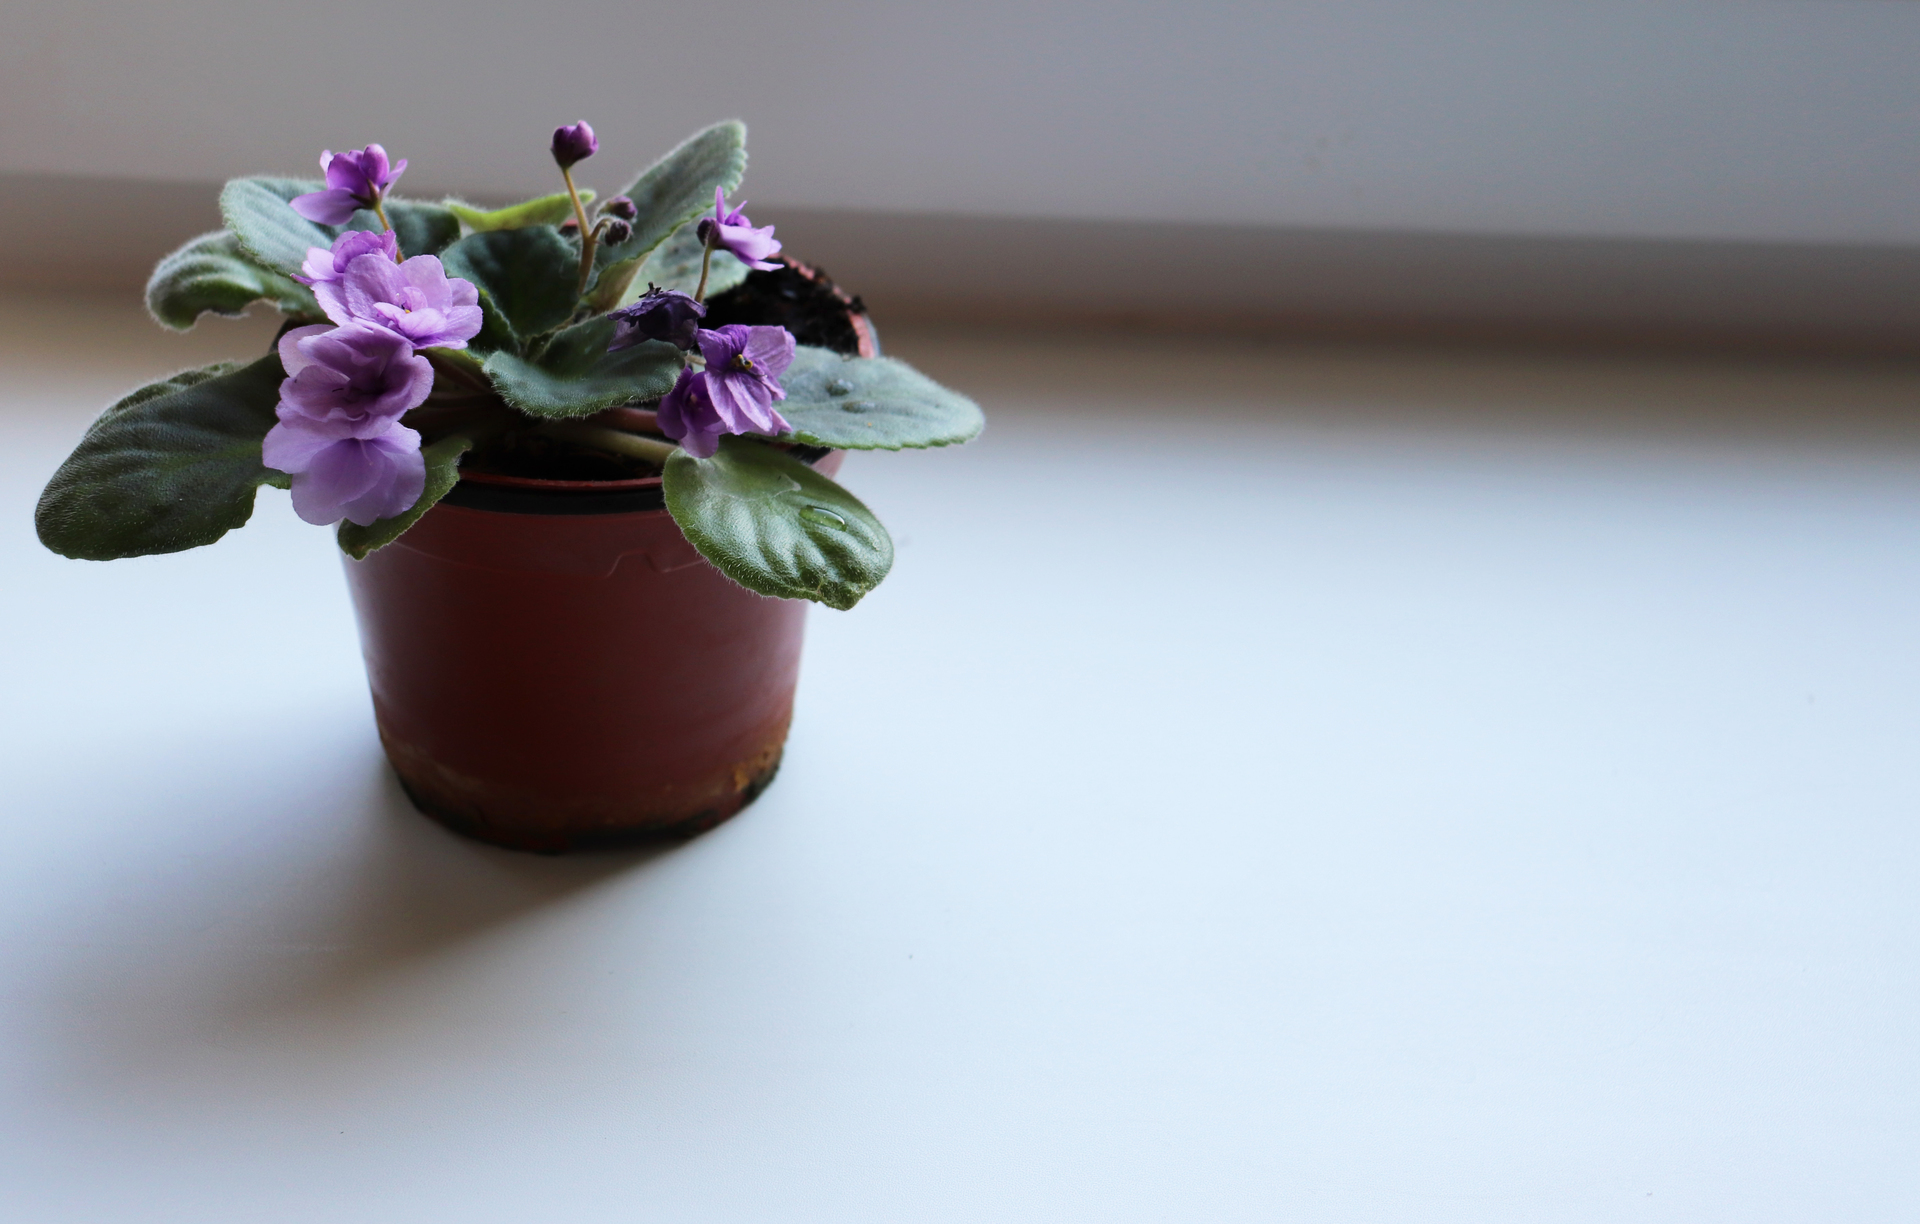 Na naszym obrazku zobaczysz uroczego małego fioletowego kwiatka w doniczce, który może stanowić piękną ozdobę dla Twojego domu. Ten delikatny kwiatek o subtelnym zapachu jest bardzo łatwy w uprawie i wymaga niewielkiej ilości ziemi i wody. W naszym artykule dowiesz się, jakie są najlepsze sposoby na pielęgnację małych kwiatów doniczkowych i jakie korzyści przynoszą do Twojego domu. Przekonaj się, jakie kwiaty doniczkowe będą najlepszym wyborem dla Twojego mieszkania i ciesz się ich pięknem przez cały rok.